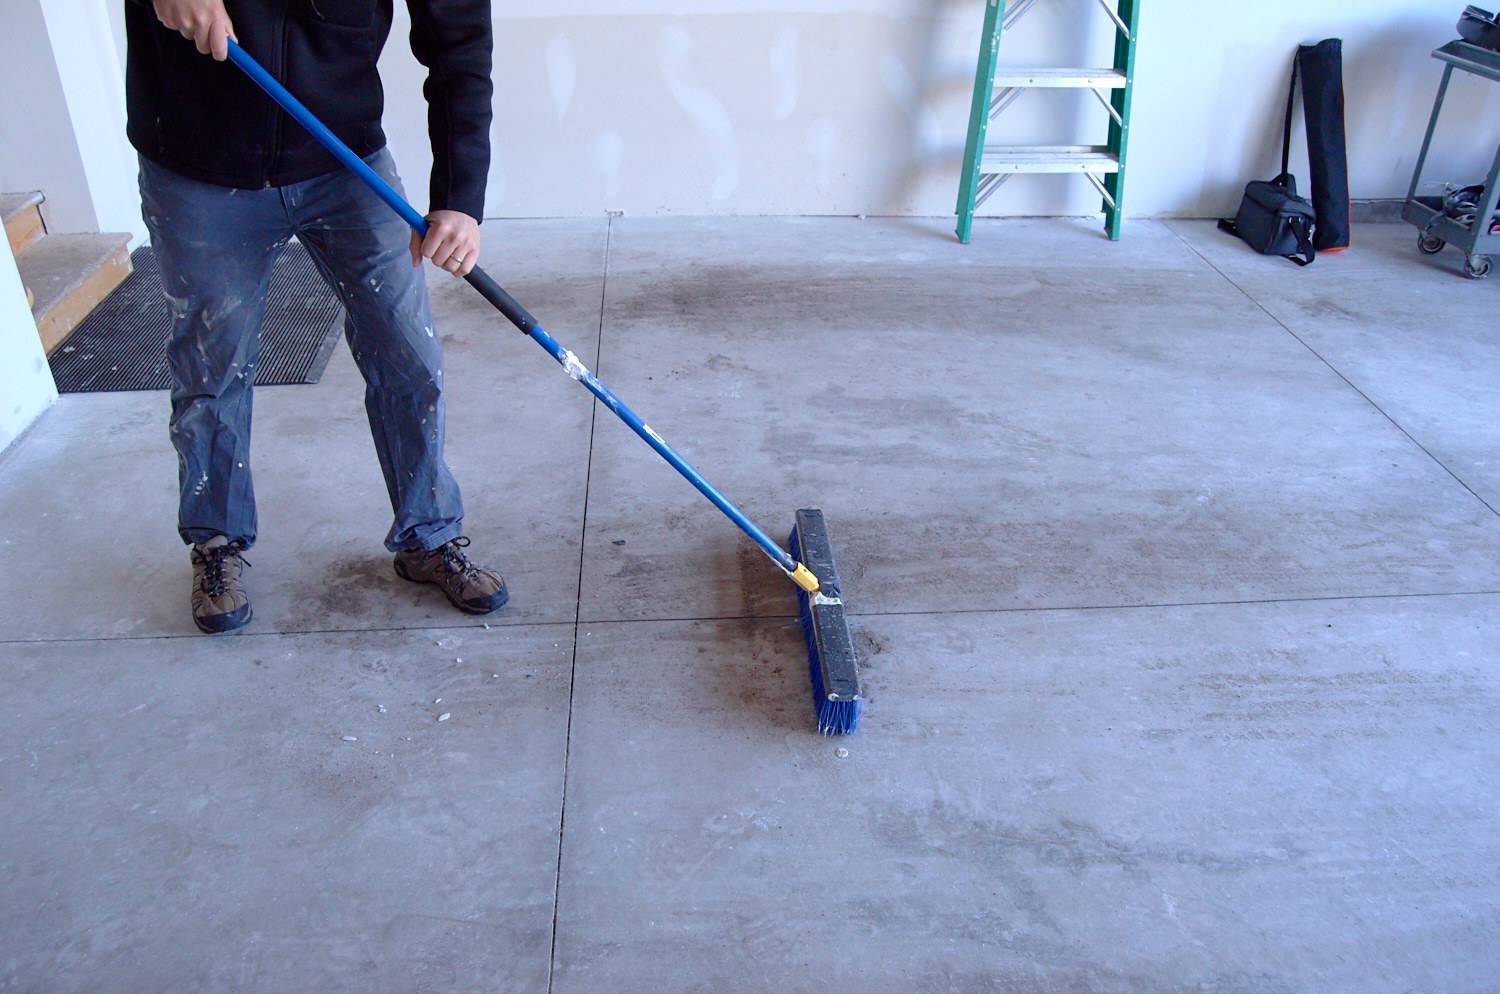 brush garage floor clean of debris before painting